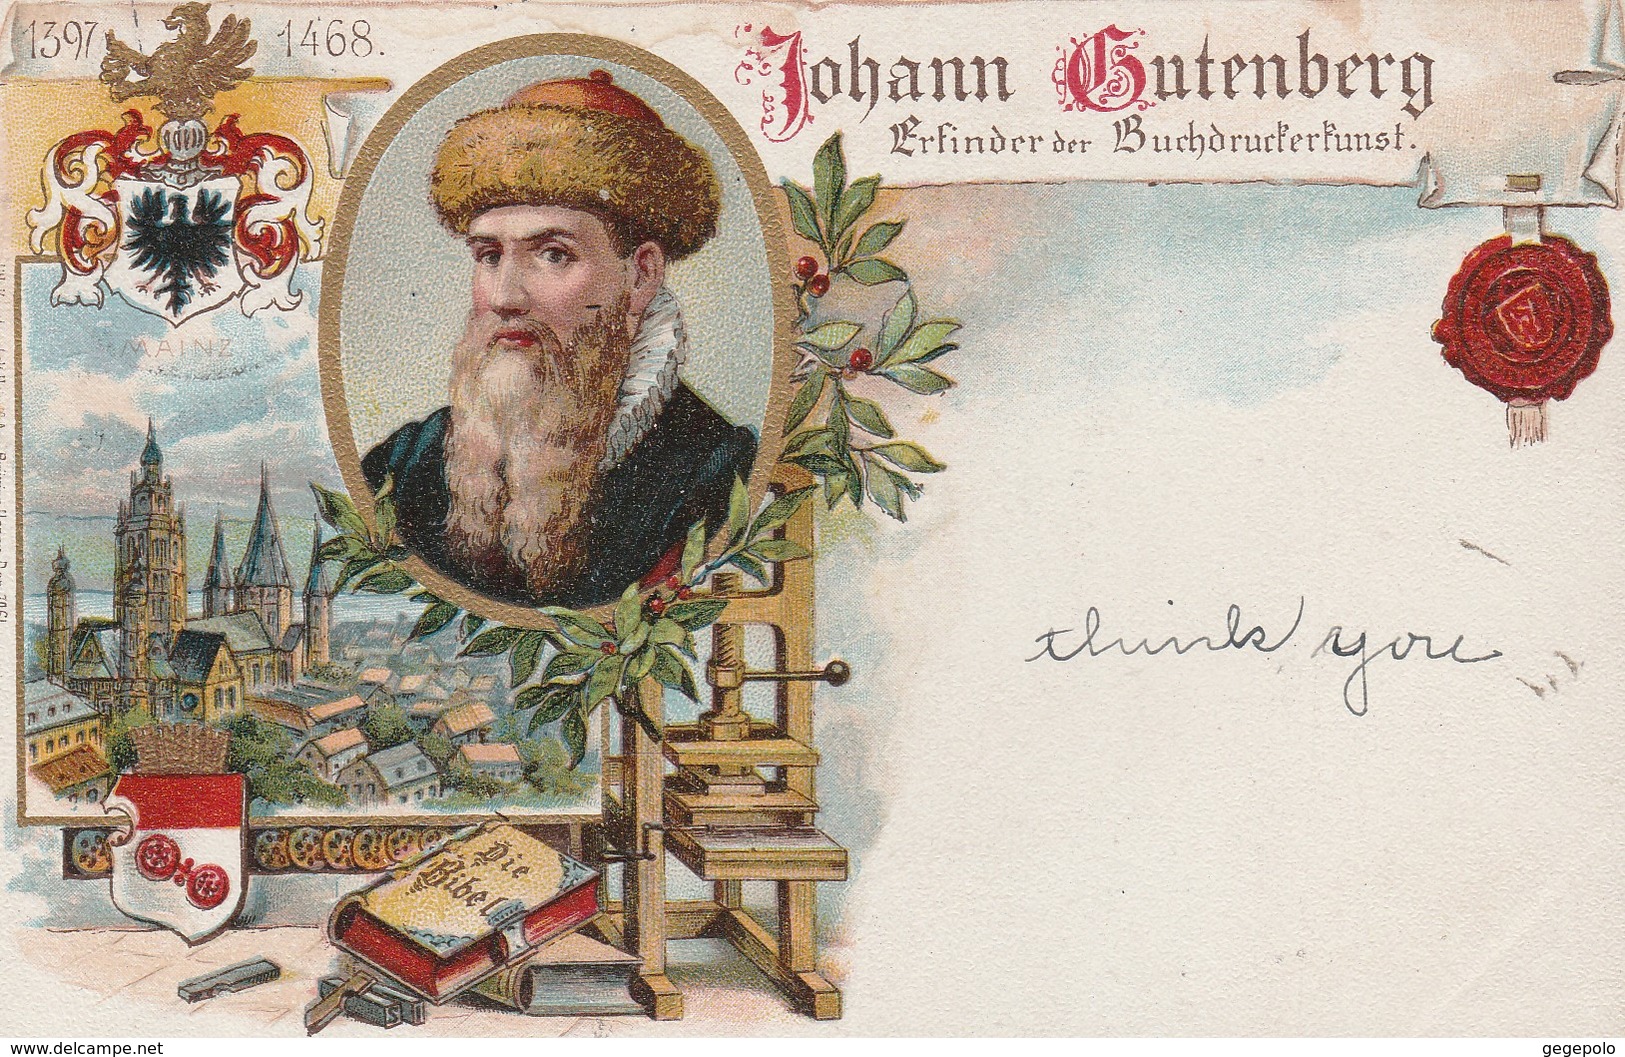 Johann GUTENBERG  ( Carte écrite En 1901 à Destination De New York City ) - Mainz